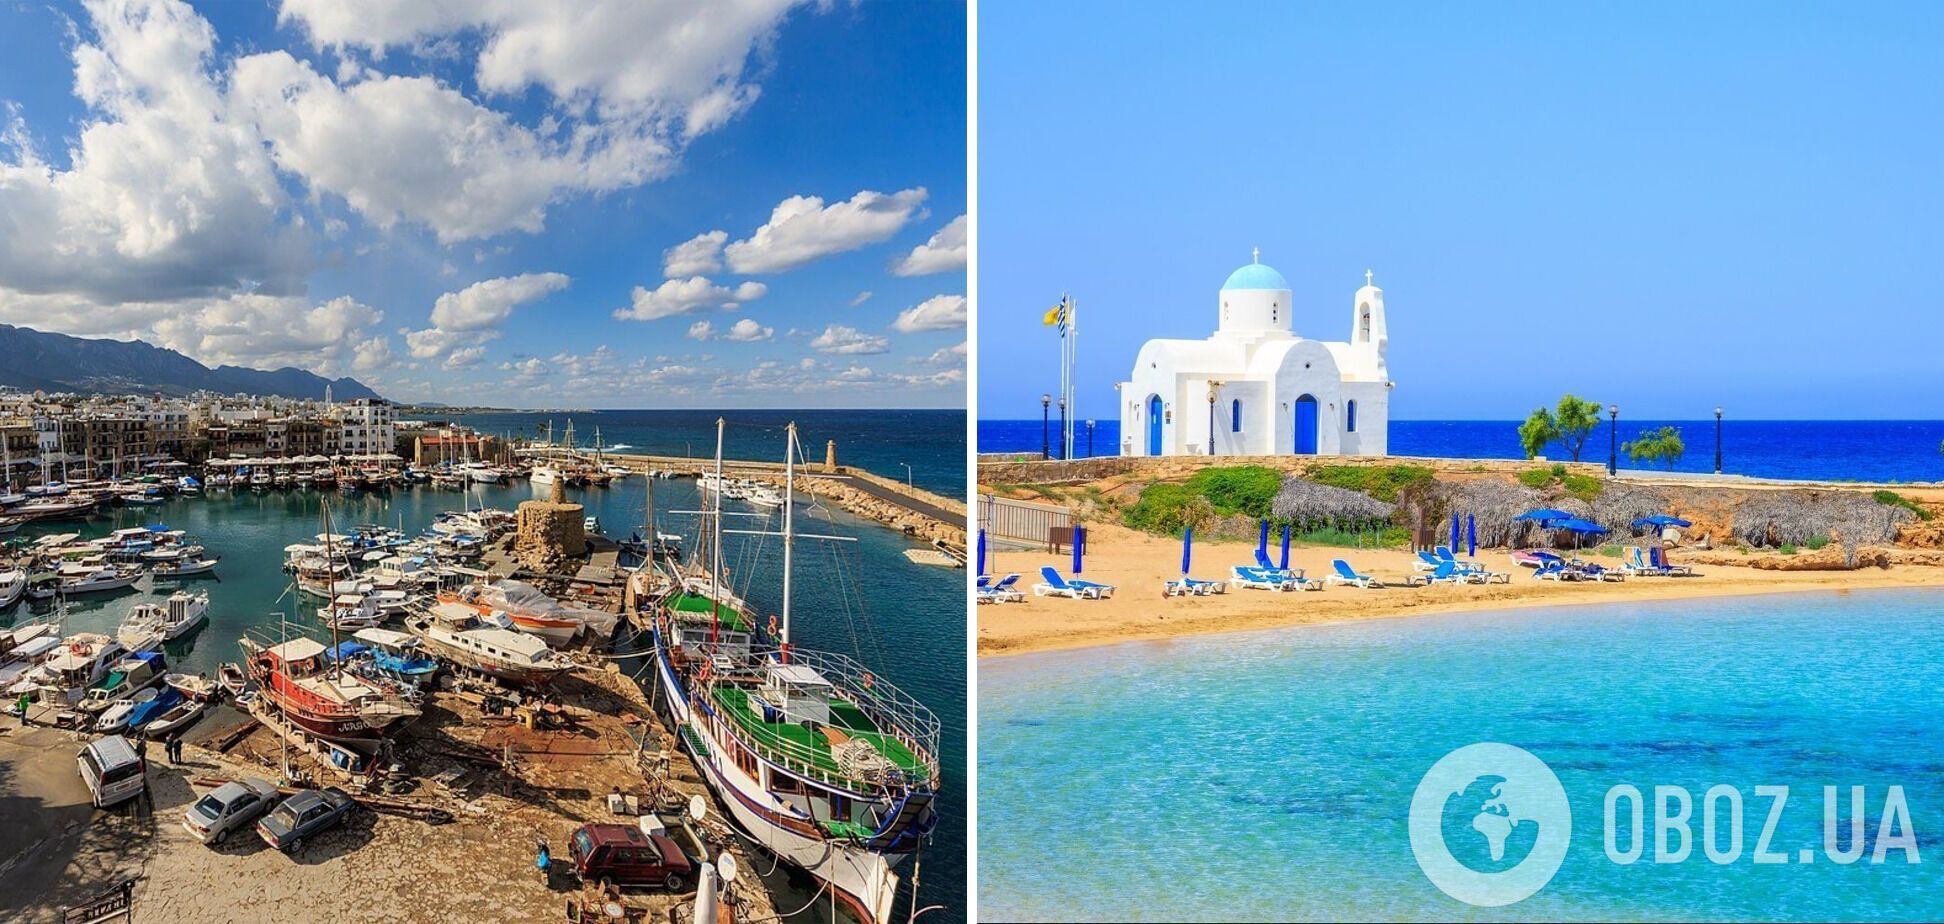 Який вигляд має популярний курорт для відпочинку Кіпр